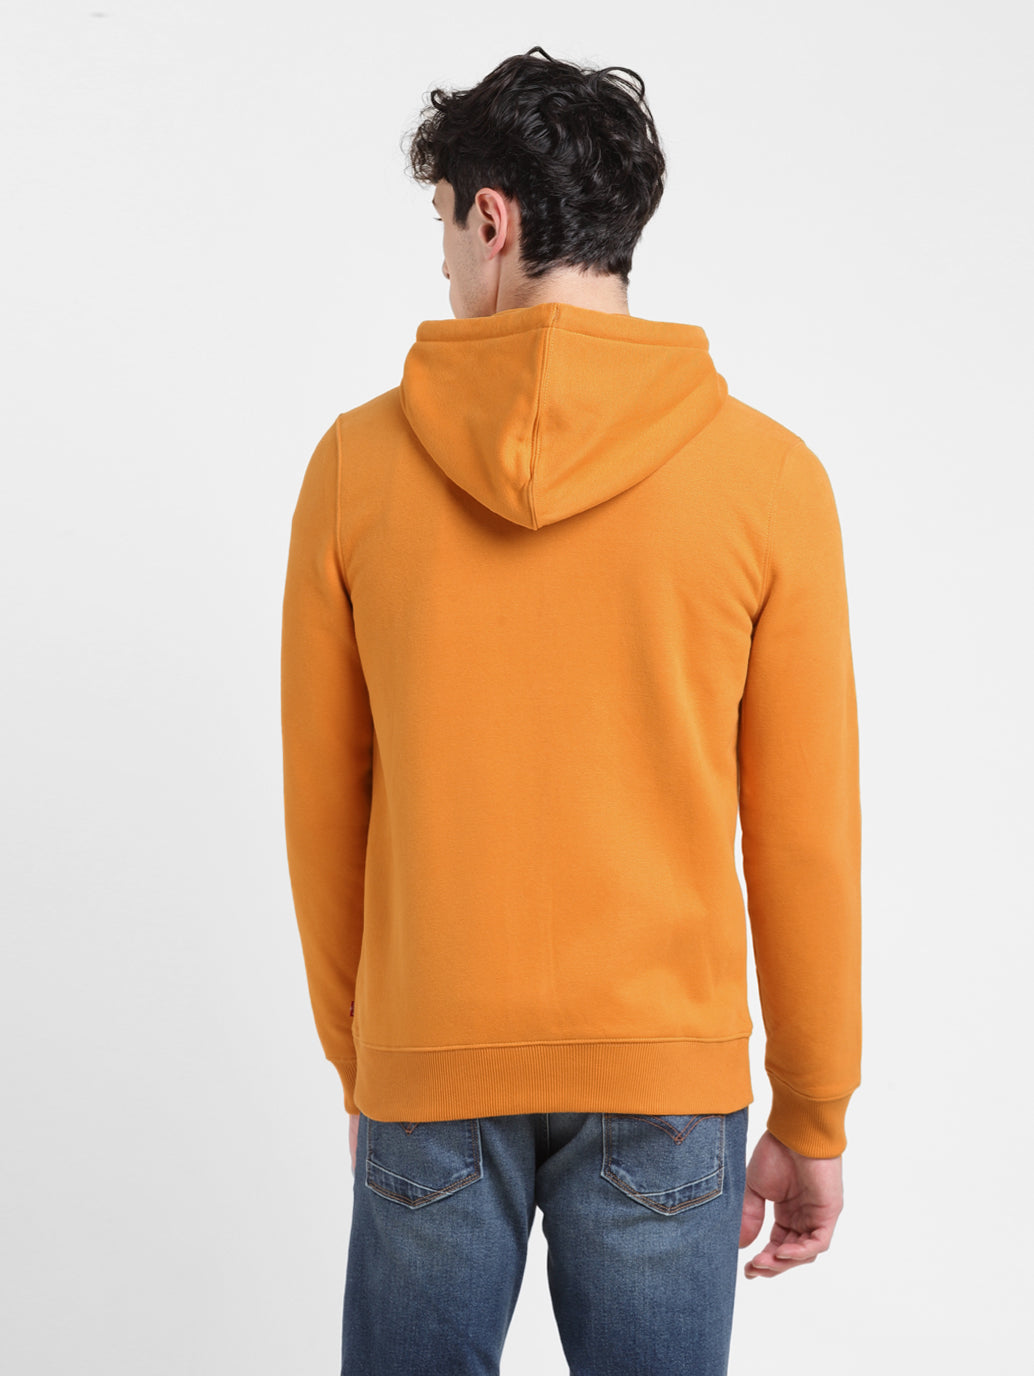 Men's Solid Orange Hooded Sweatshirt